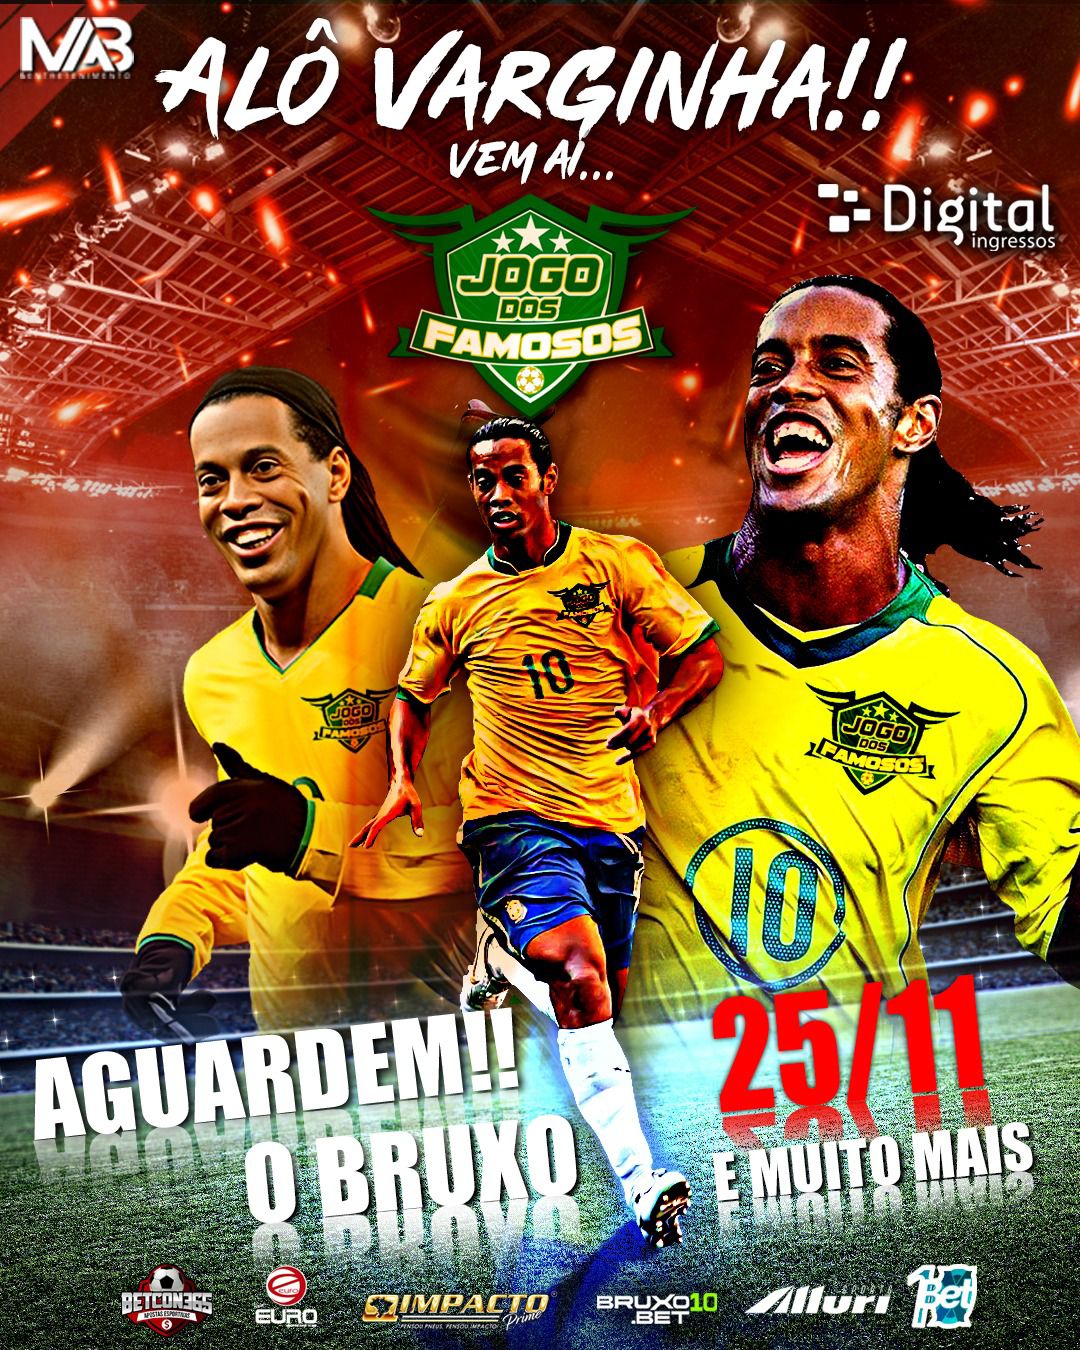 Estrelas Brilham no ‘Jogo dos Famosos’ de Varginha: Patrãozinho do Piseiro e Ronaldinho Gaúcho Confirmados